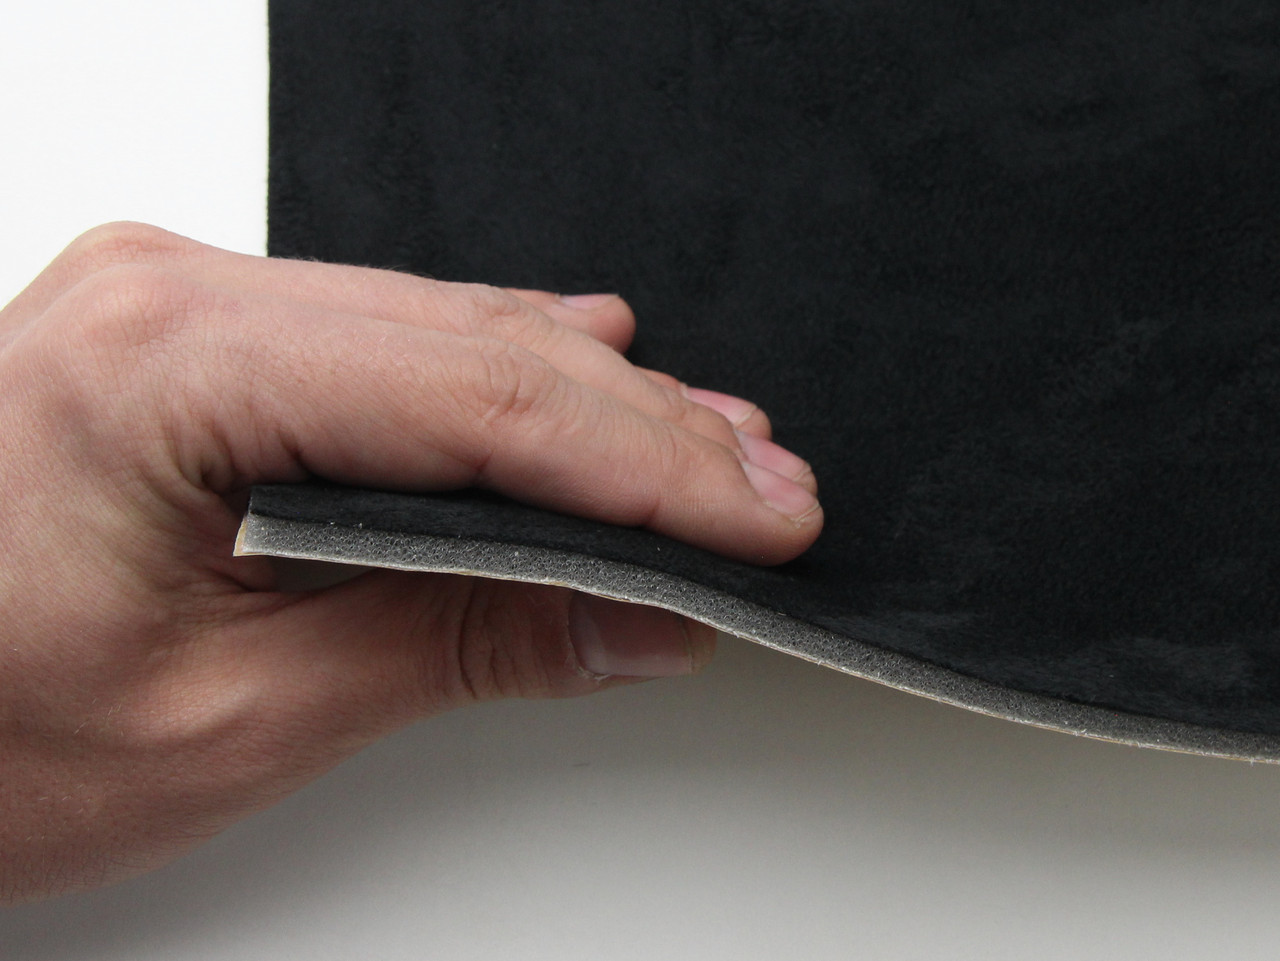 Автоткань самоклейка Антара, цвет черный, на поролоне и сетке, толщина 4мм, лист, Турция детальная фотка